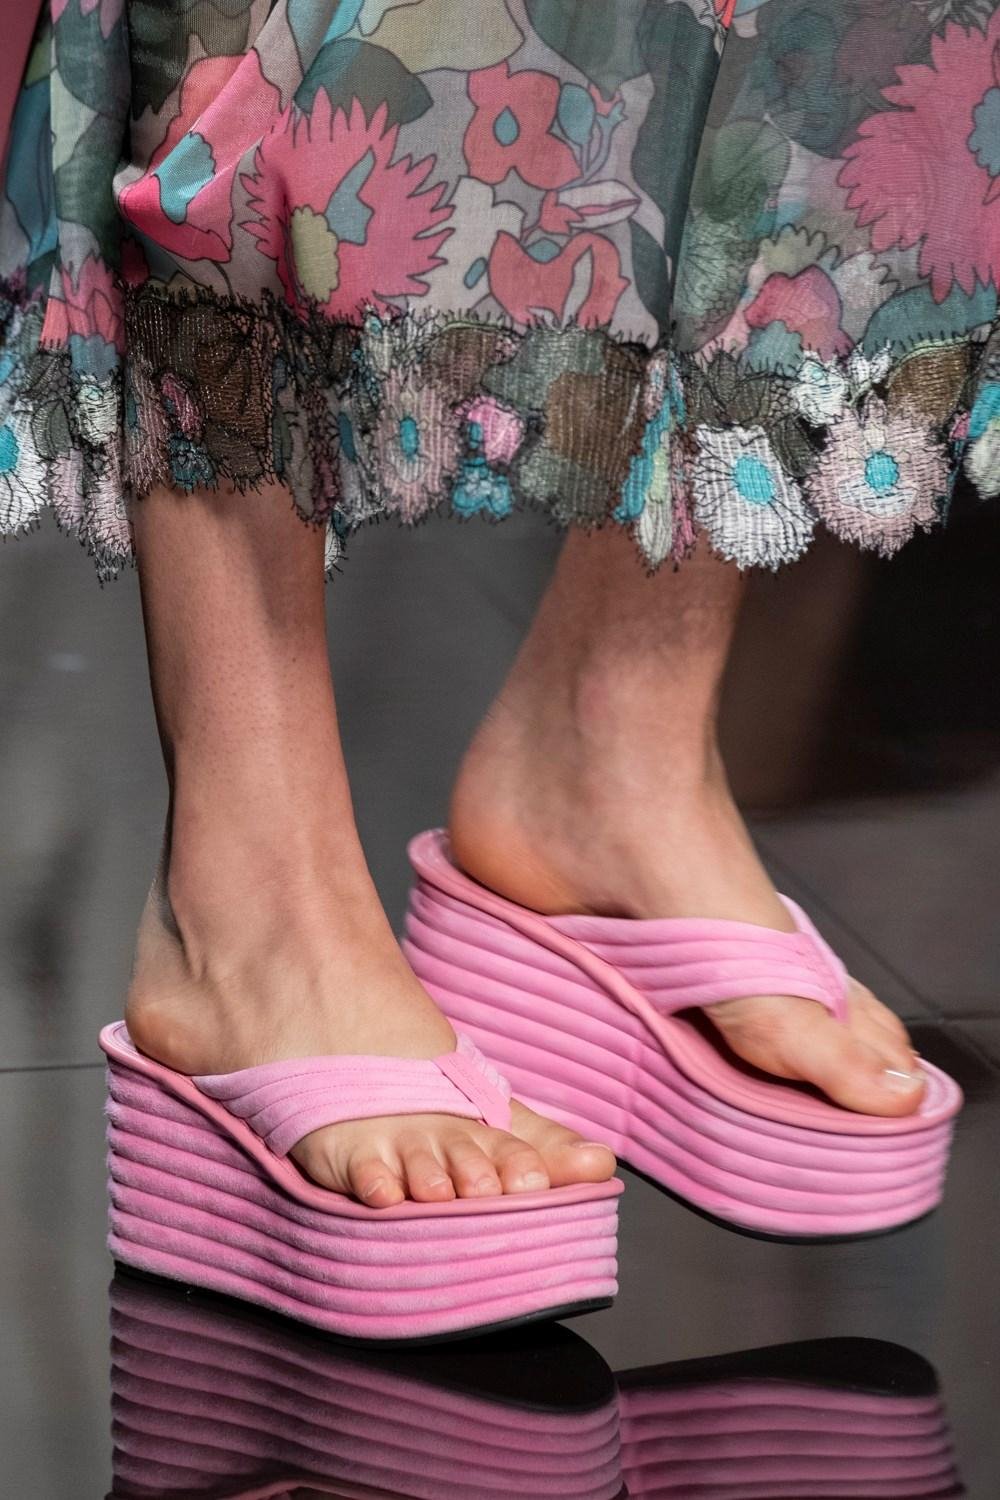 حذاء شوز أكسسوار موضة ربيع 2020 ملابس على الموضة أزياء نسائية تصاميم